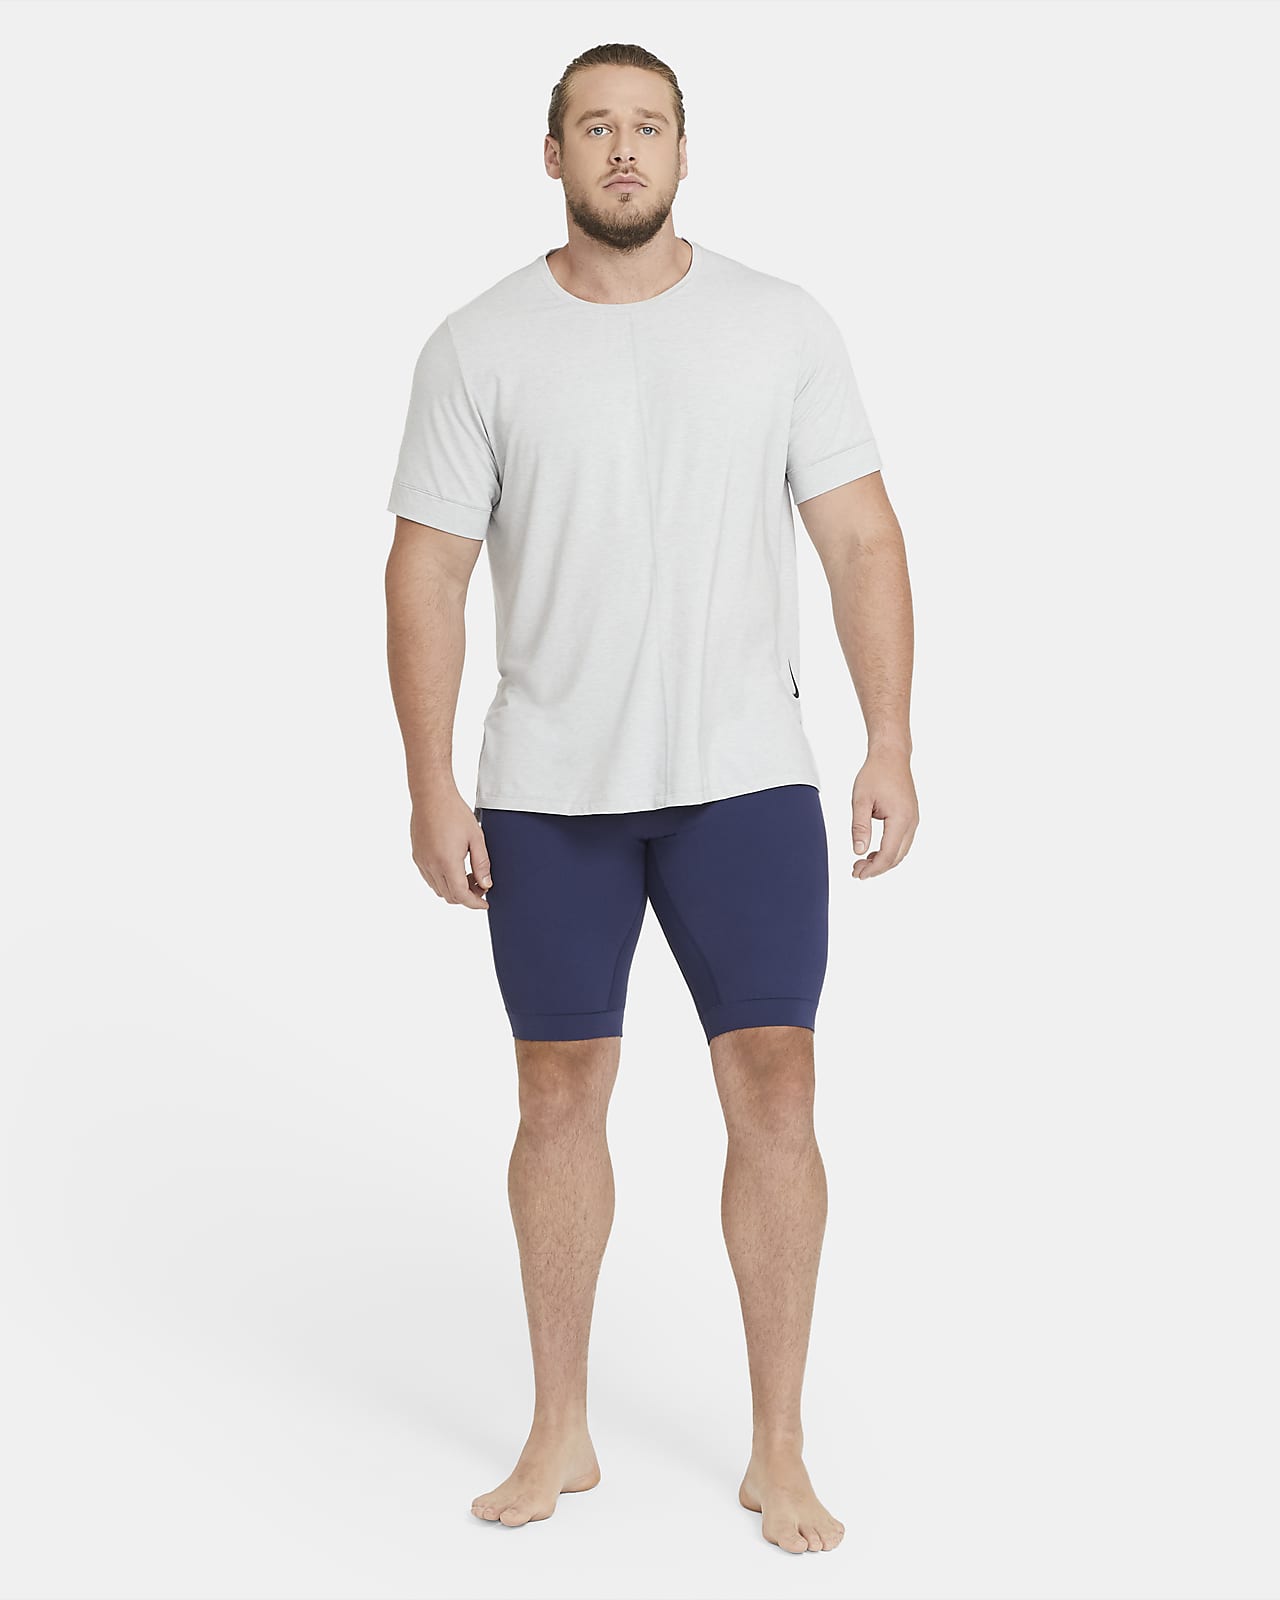 nike yoga men's shorts